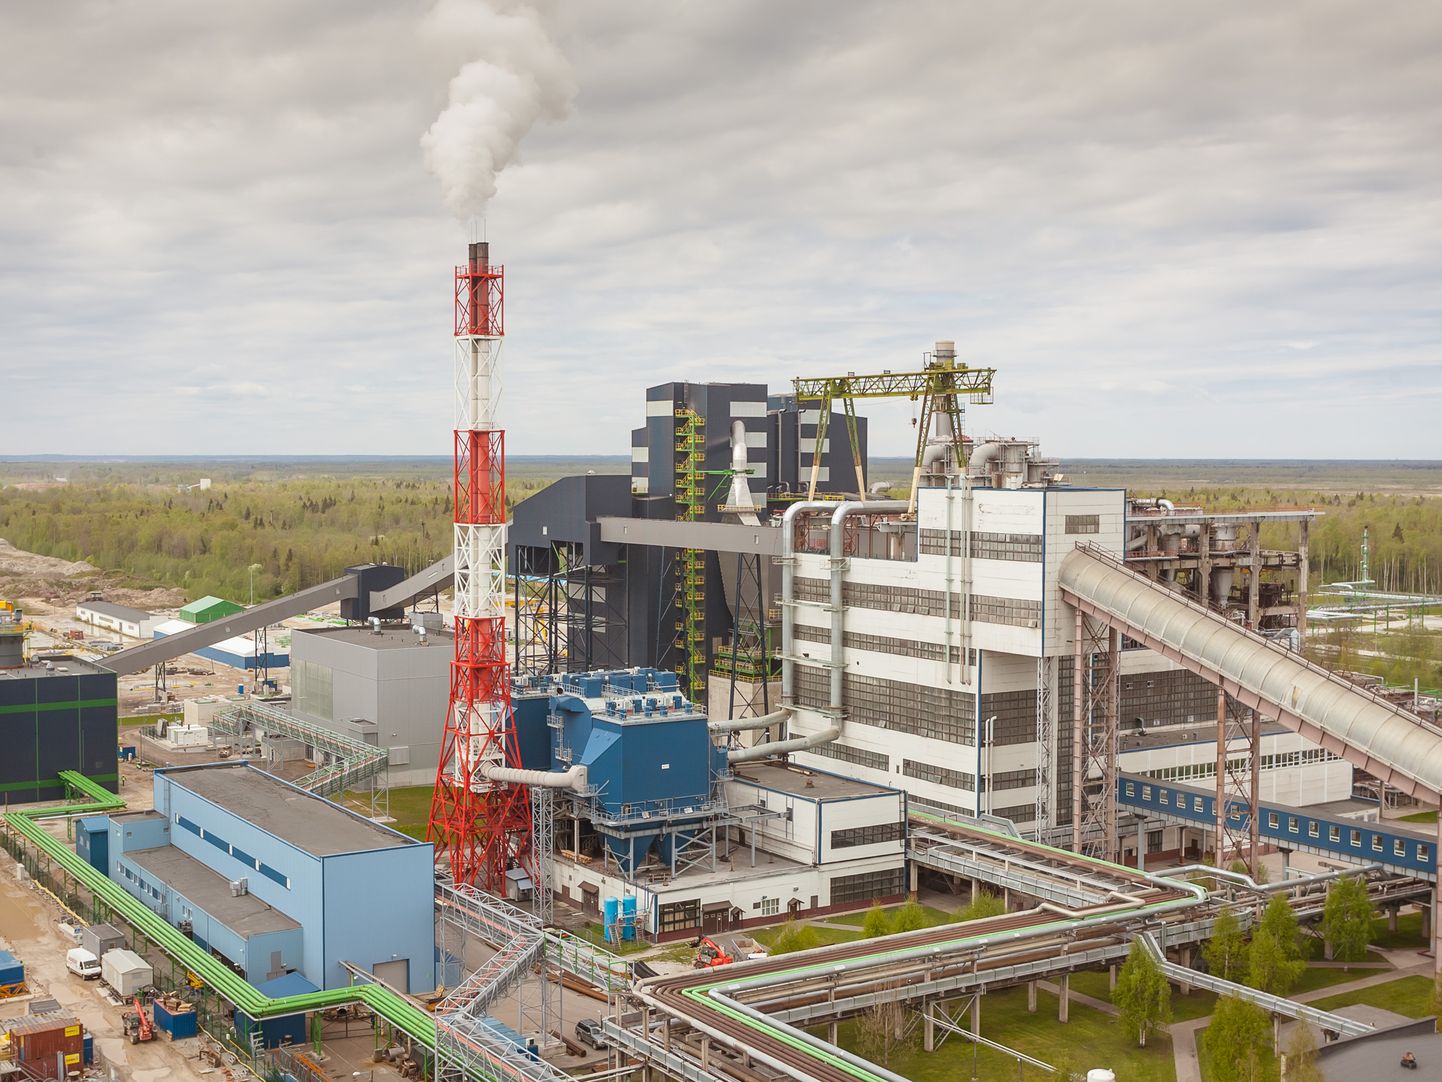 Заводы масел "Eesti Energia" близ Нарвы в Аувере. Рядом с ними началось строительство еще одного завода масел, однако на плане строительства завода по предварительному рафинированию поставлен крест.